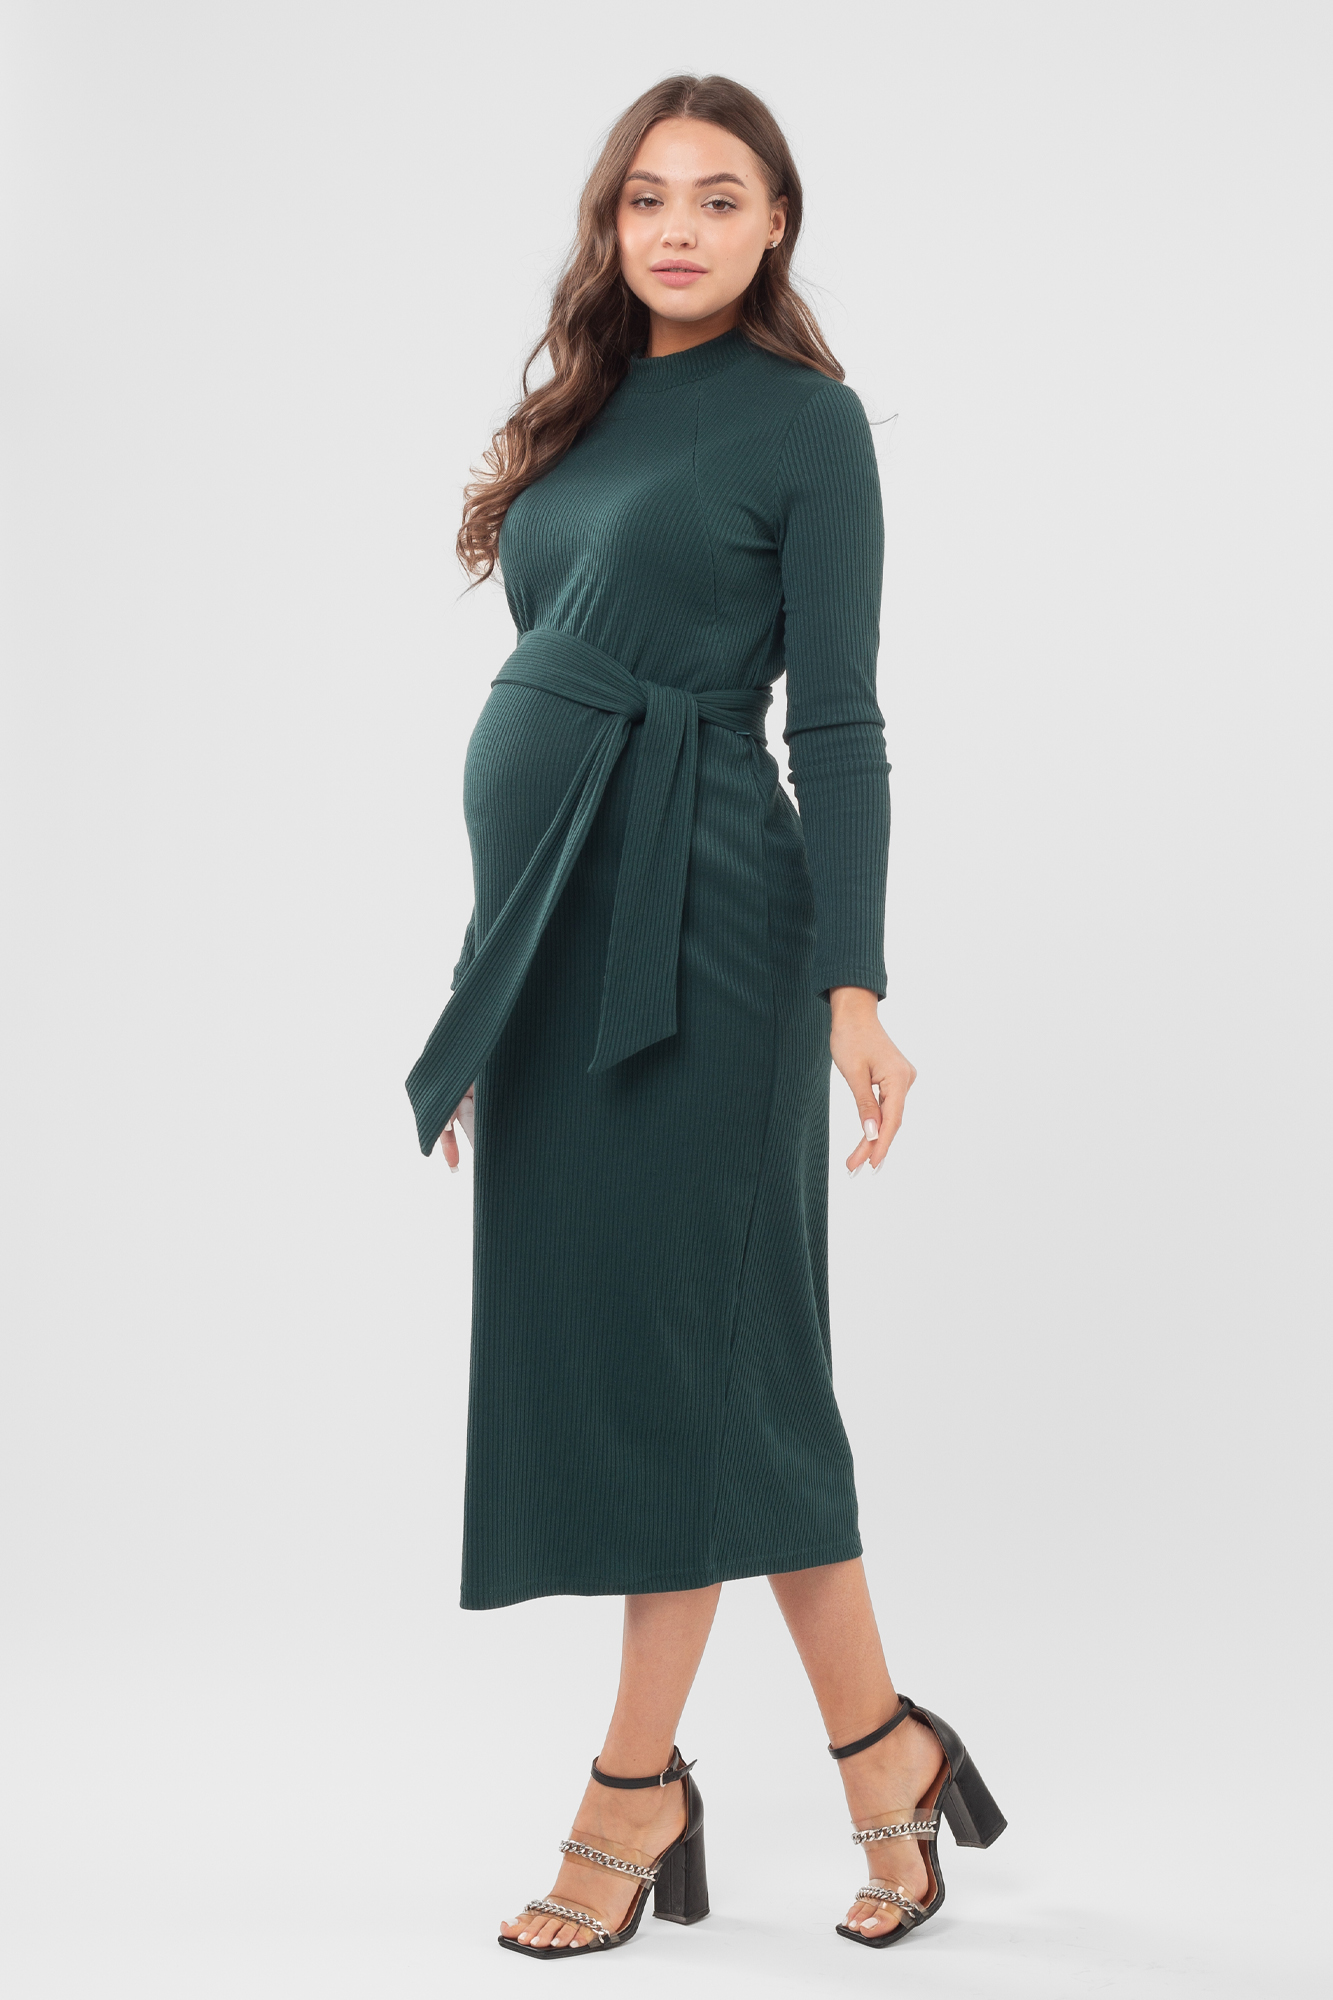 Платье для беременных женское Magica bellezza 0178а зеленое 48 RU